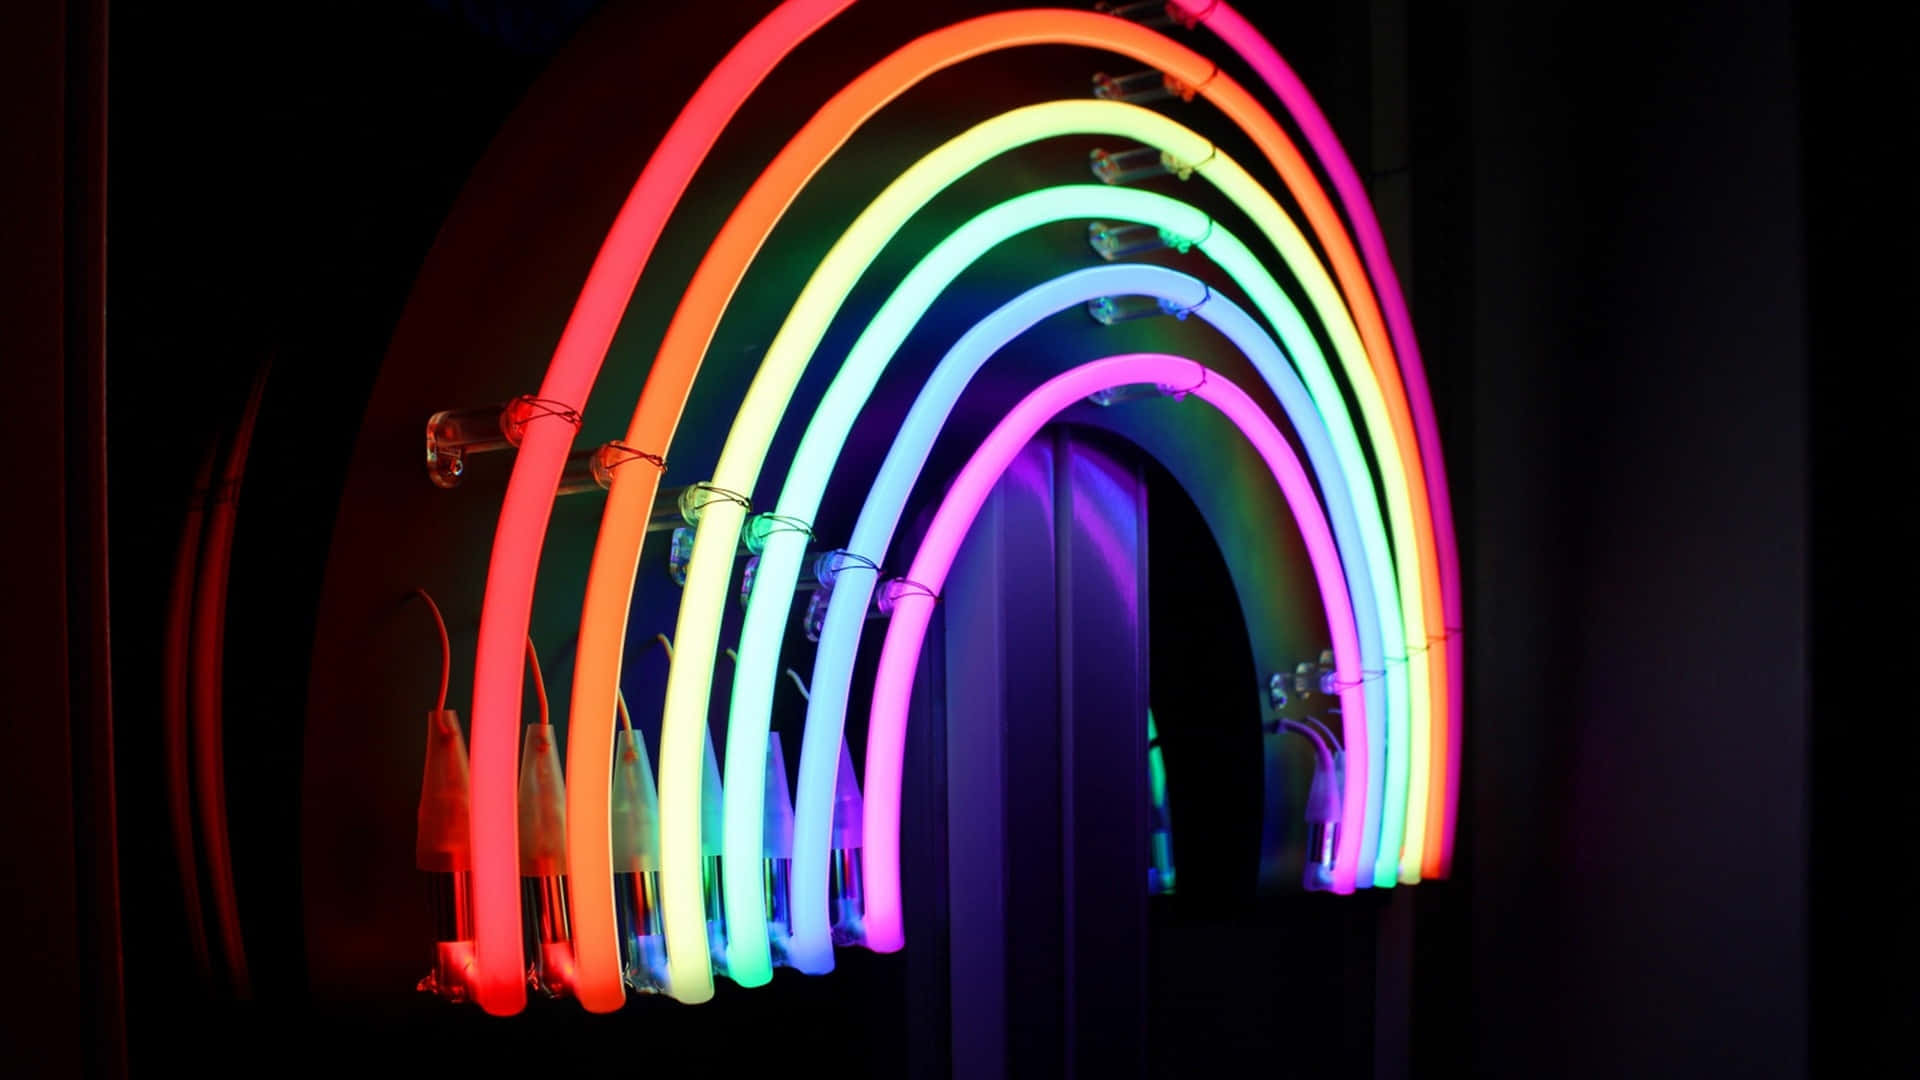 Vibrant Neon Rainbow Art Wallpaper